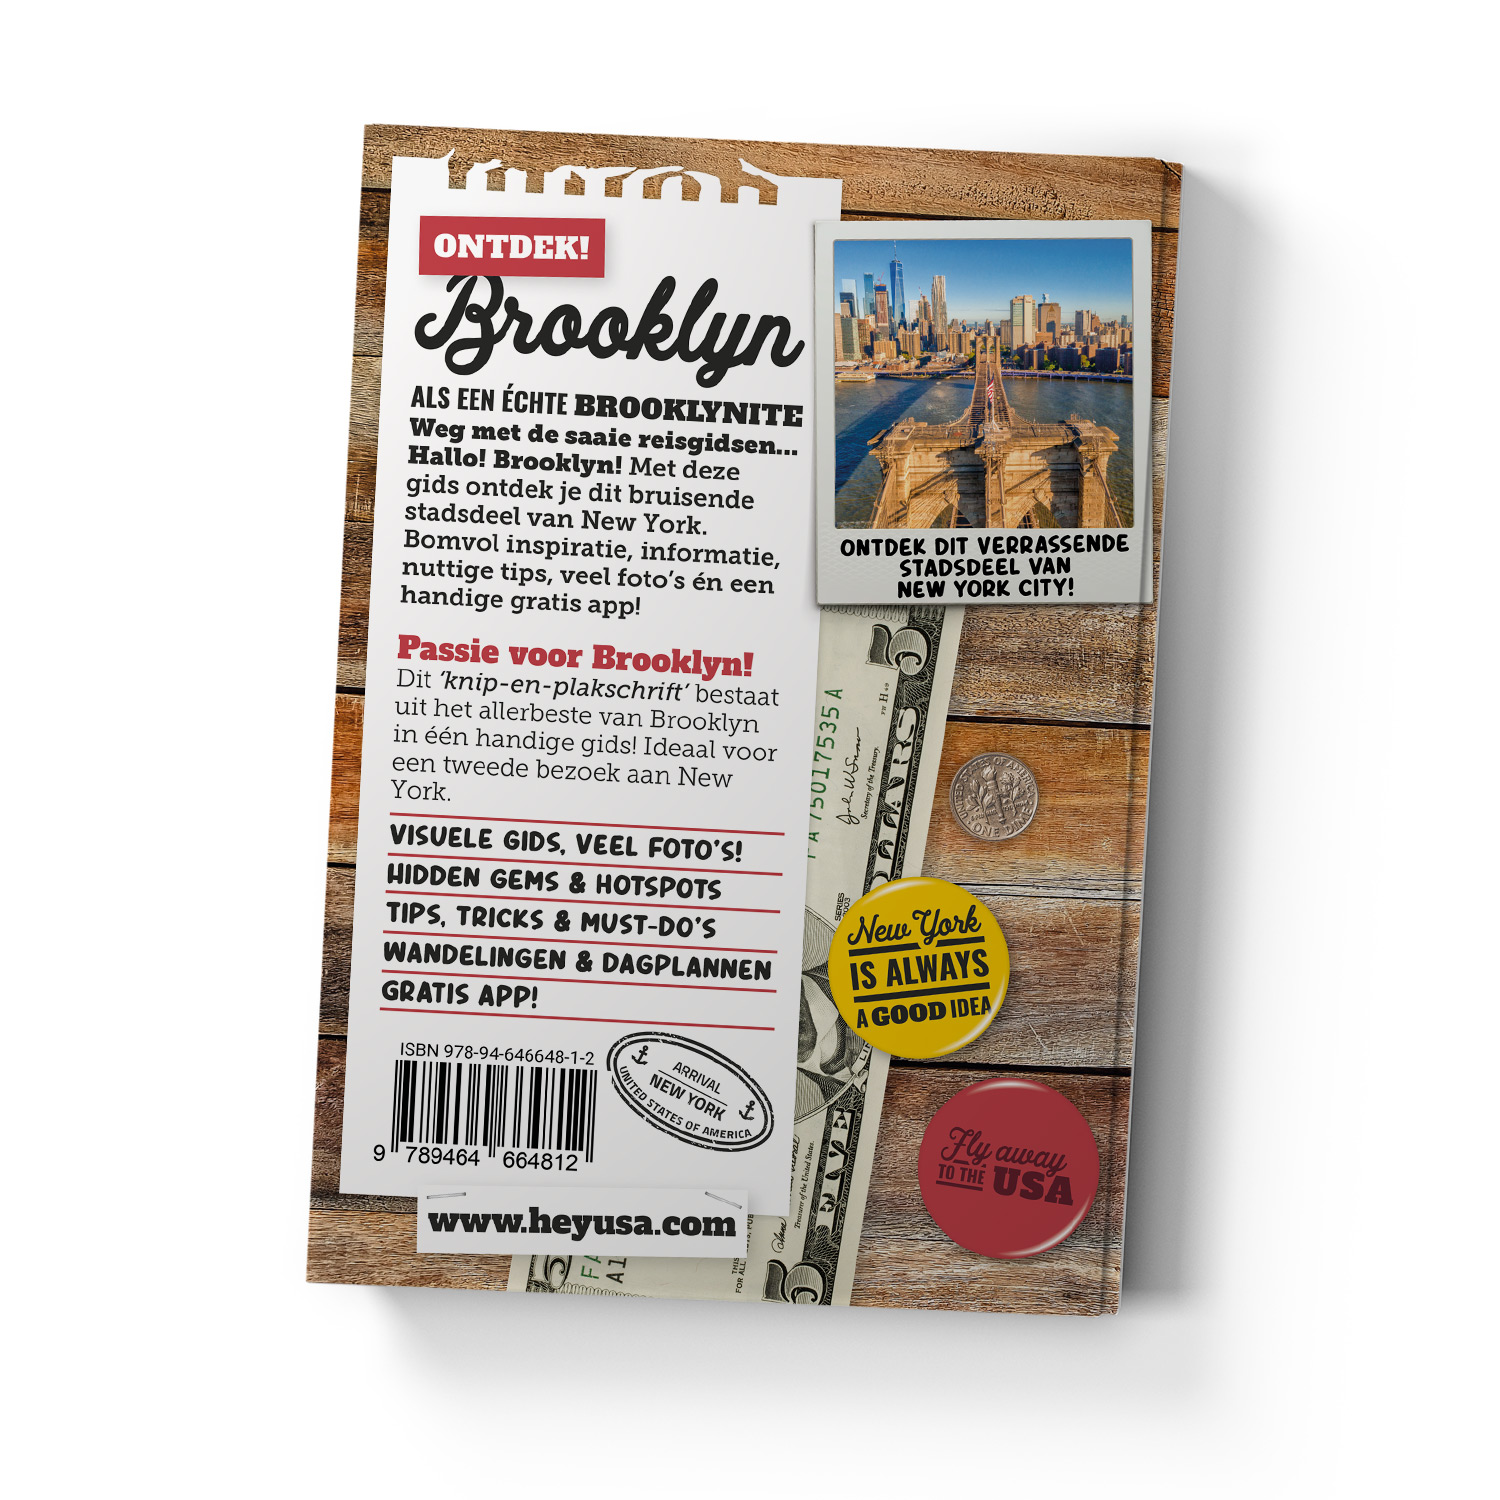 Met de reisgids Hallo! Brooklyn ontdek je dit stadsdeel als een échte Brooklynite!